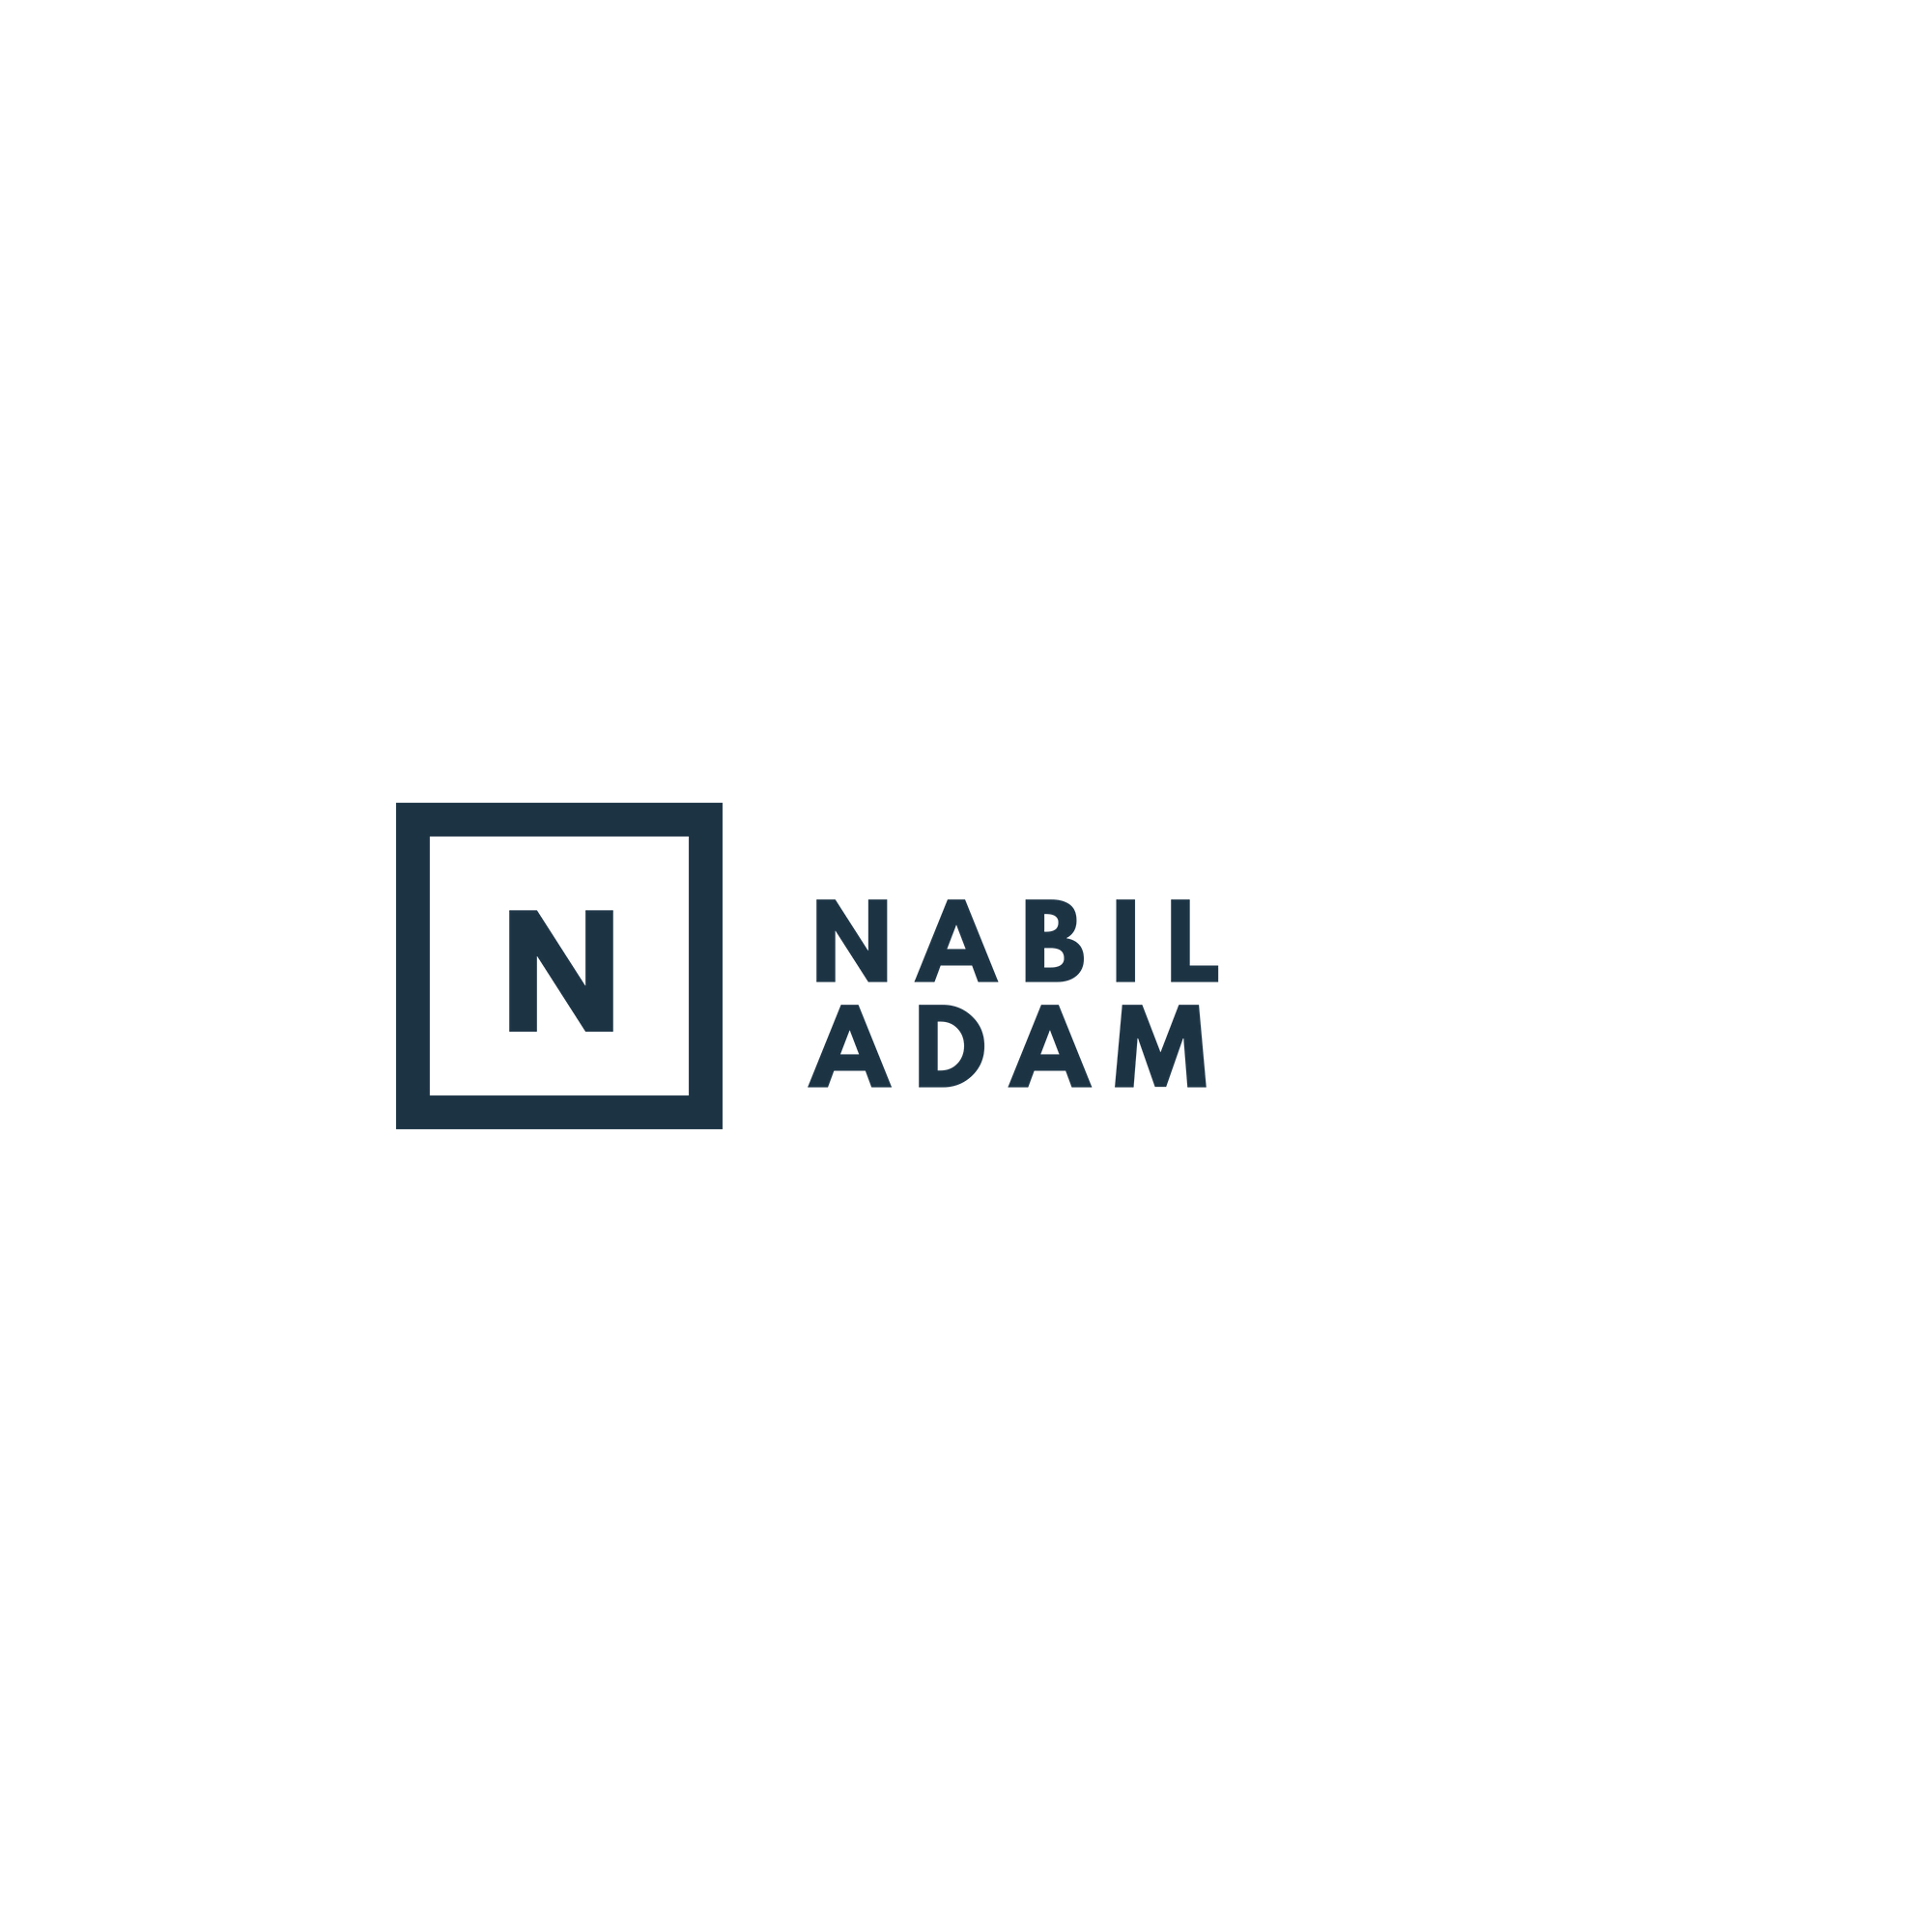 Nabil Adam | Technology